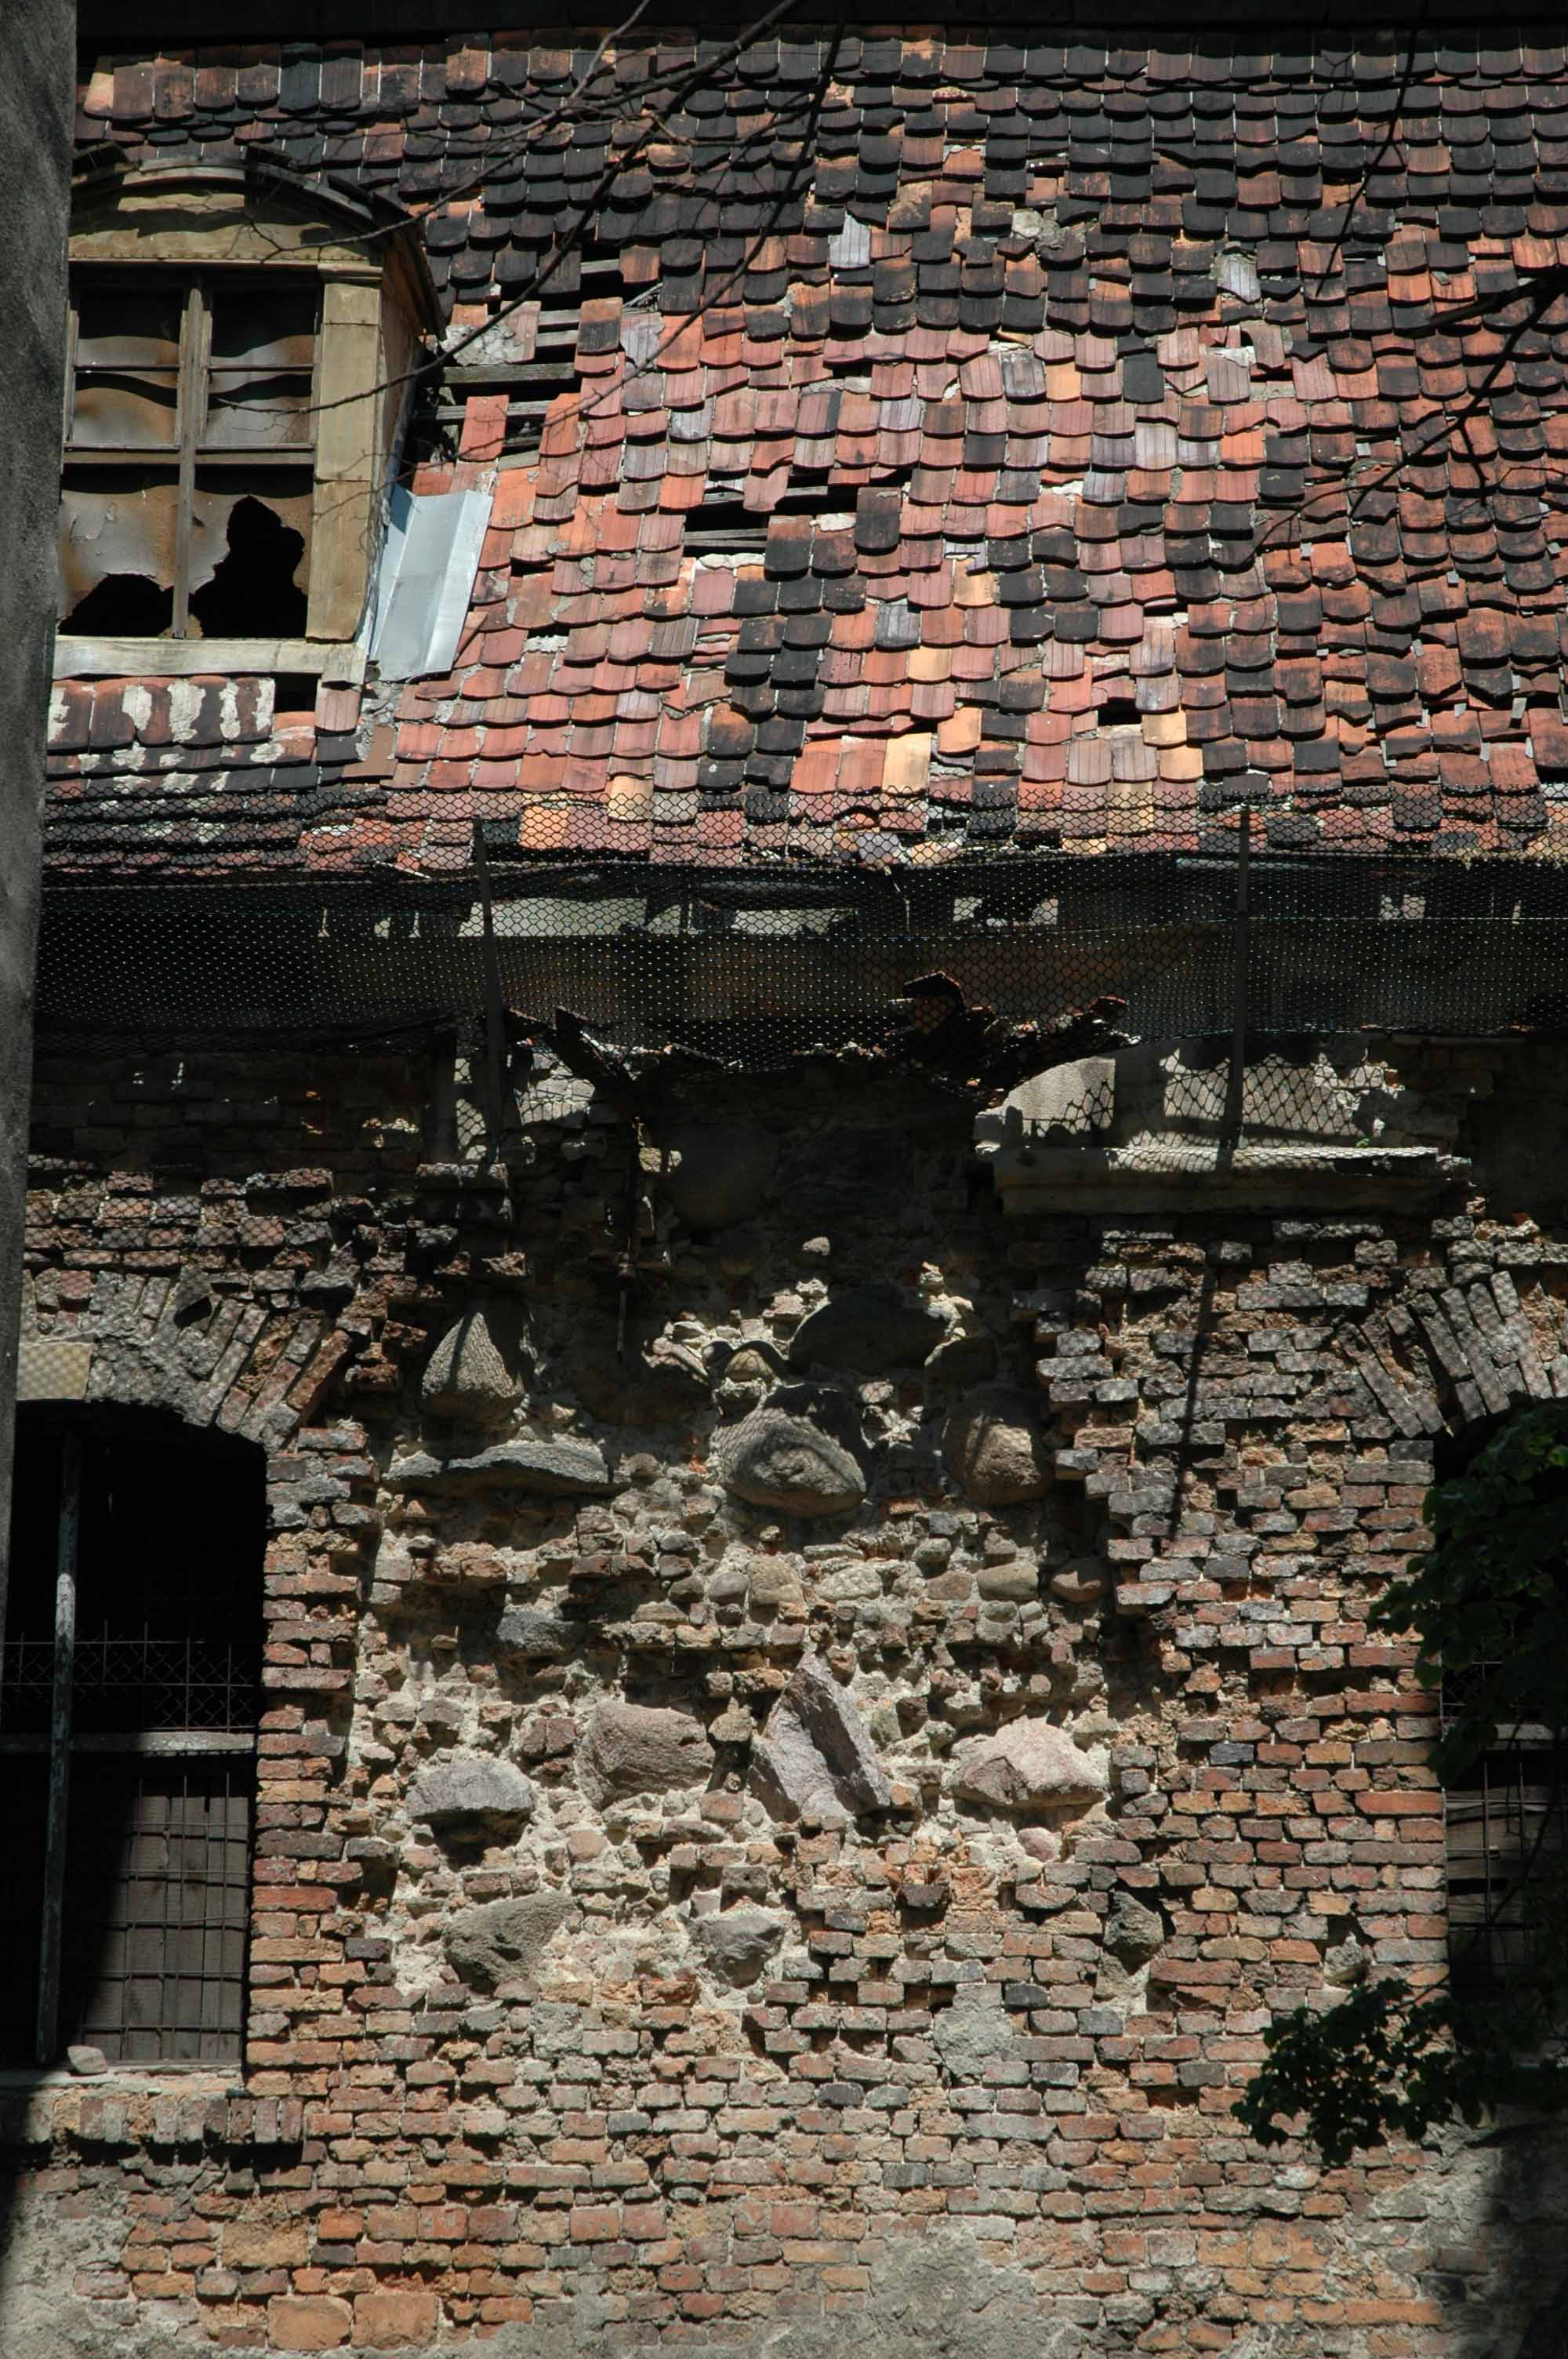 Zabytkowa budowla (w ruinie) z cegły gotyckiej oraz bloków kamiennych